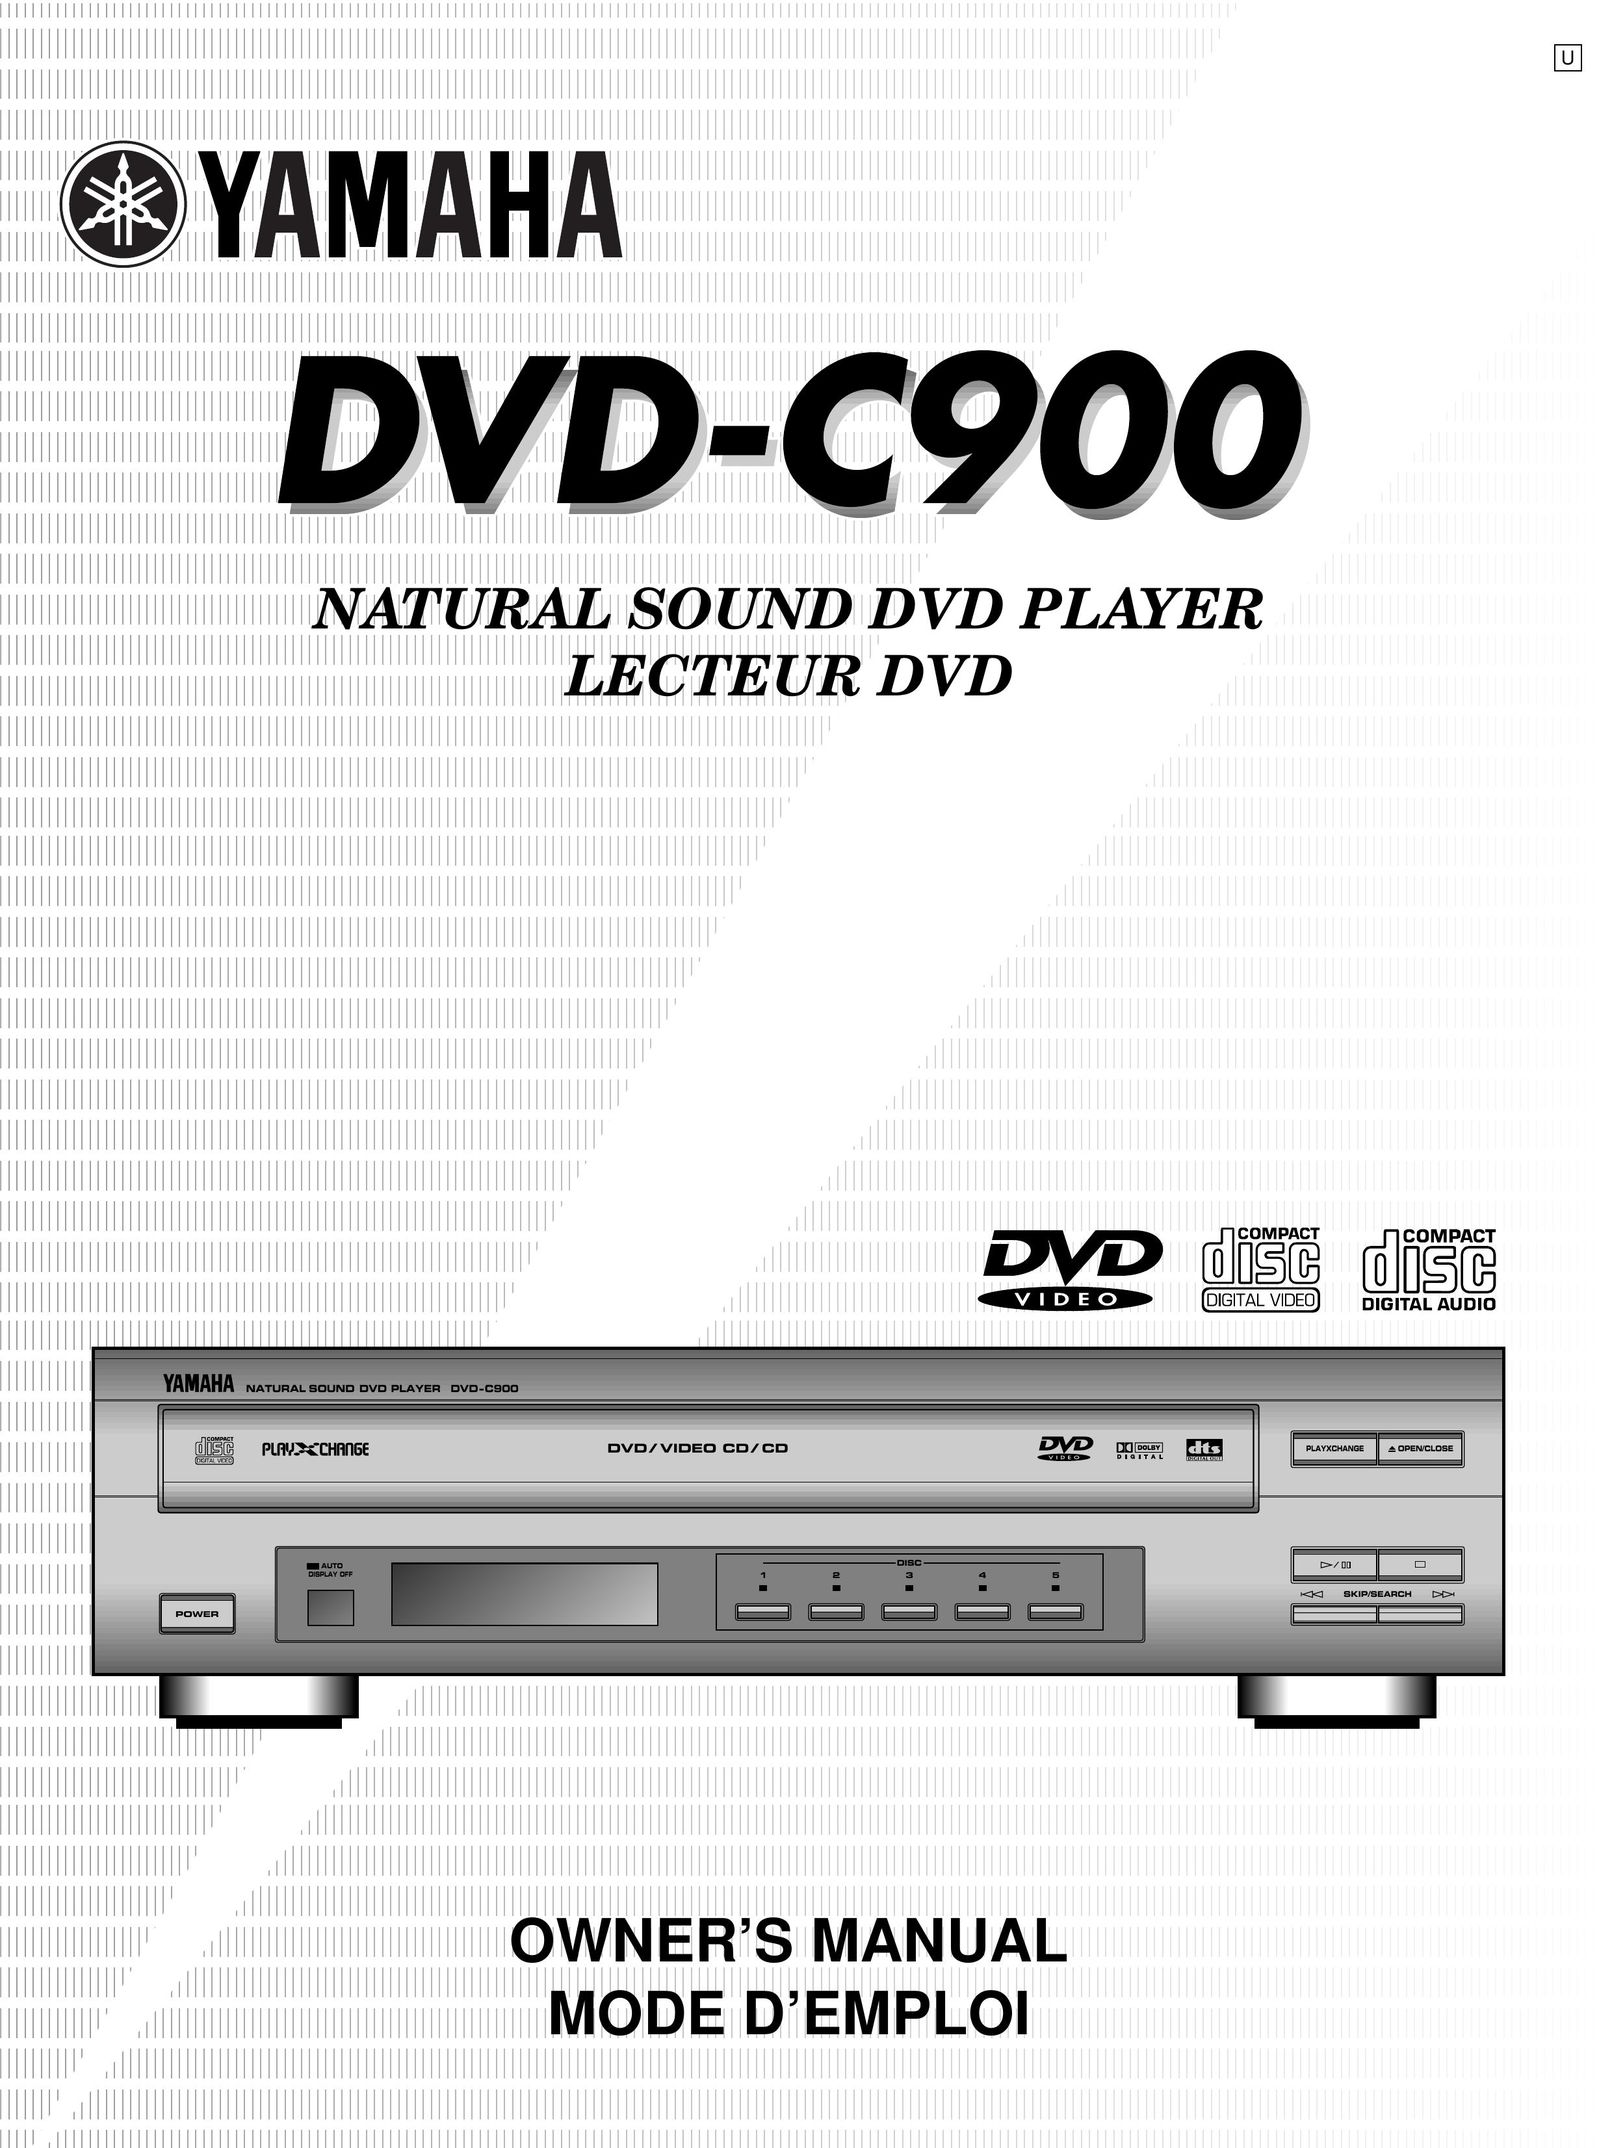 Yamaha DVD-C900 DVD Player User Manual